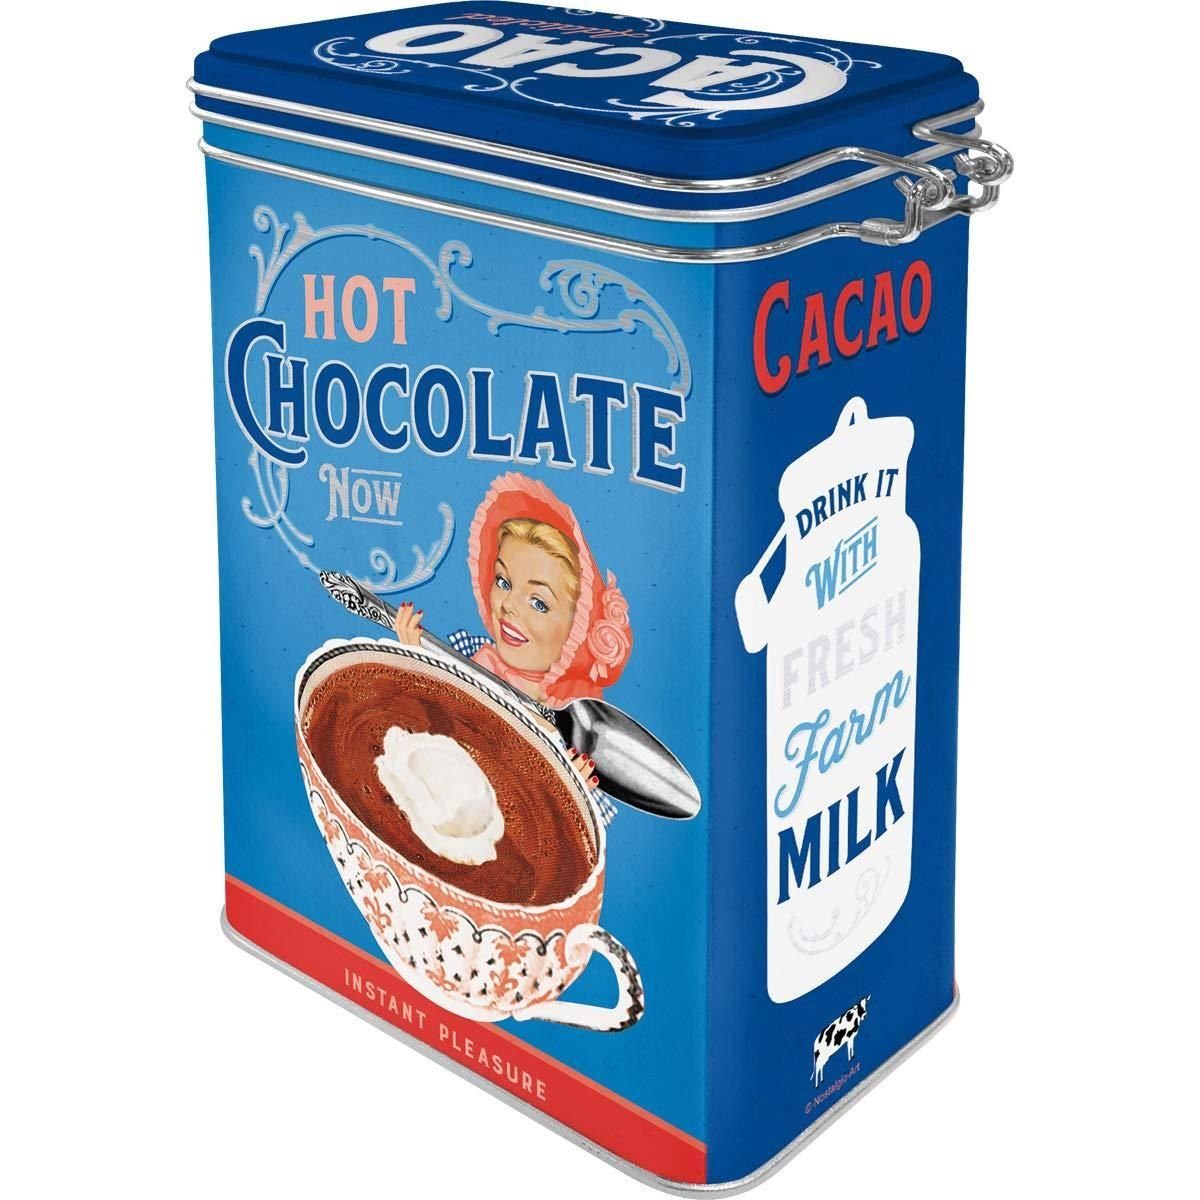 Cacao - Kaffeedose - It Aromadose 50's! Say Nostalgic-Art Addicted